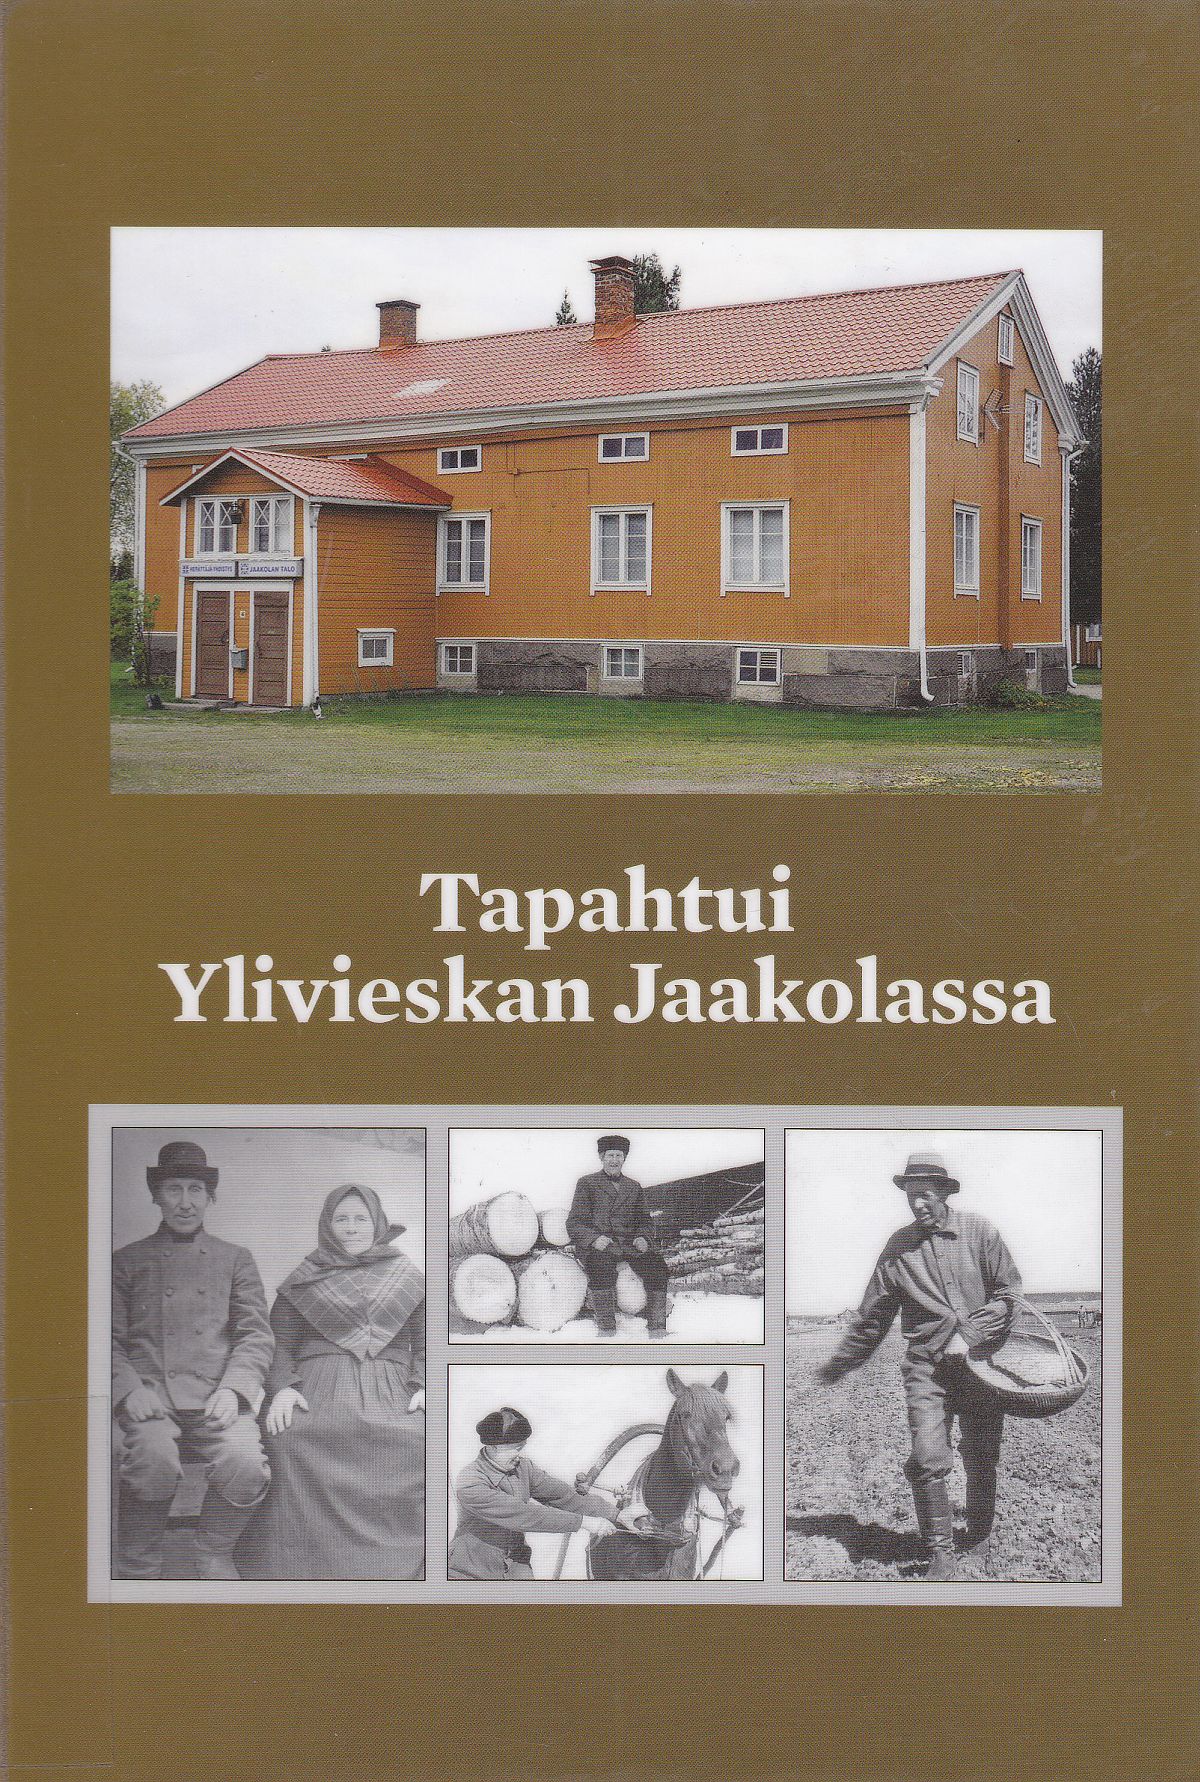 Jouko Hannulan Tapahtui Ylivieskan Jaakolassa -teoksen kannessa on Jaakolan talo sekä historiallisia kuvia.